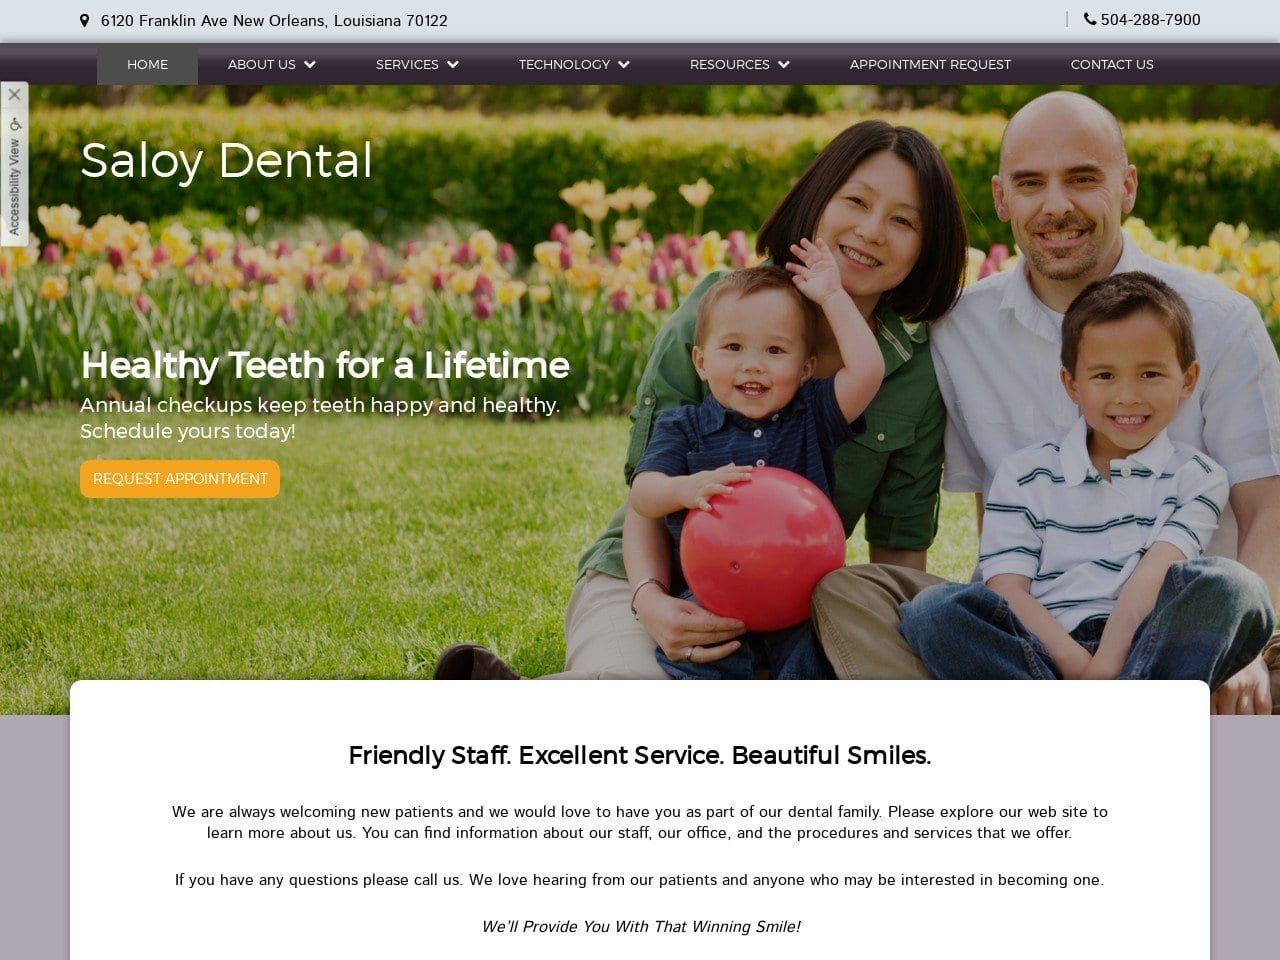 Saloy Dental Group Website Screenshot from saloydental.com